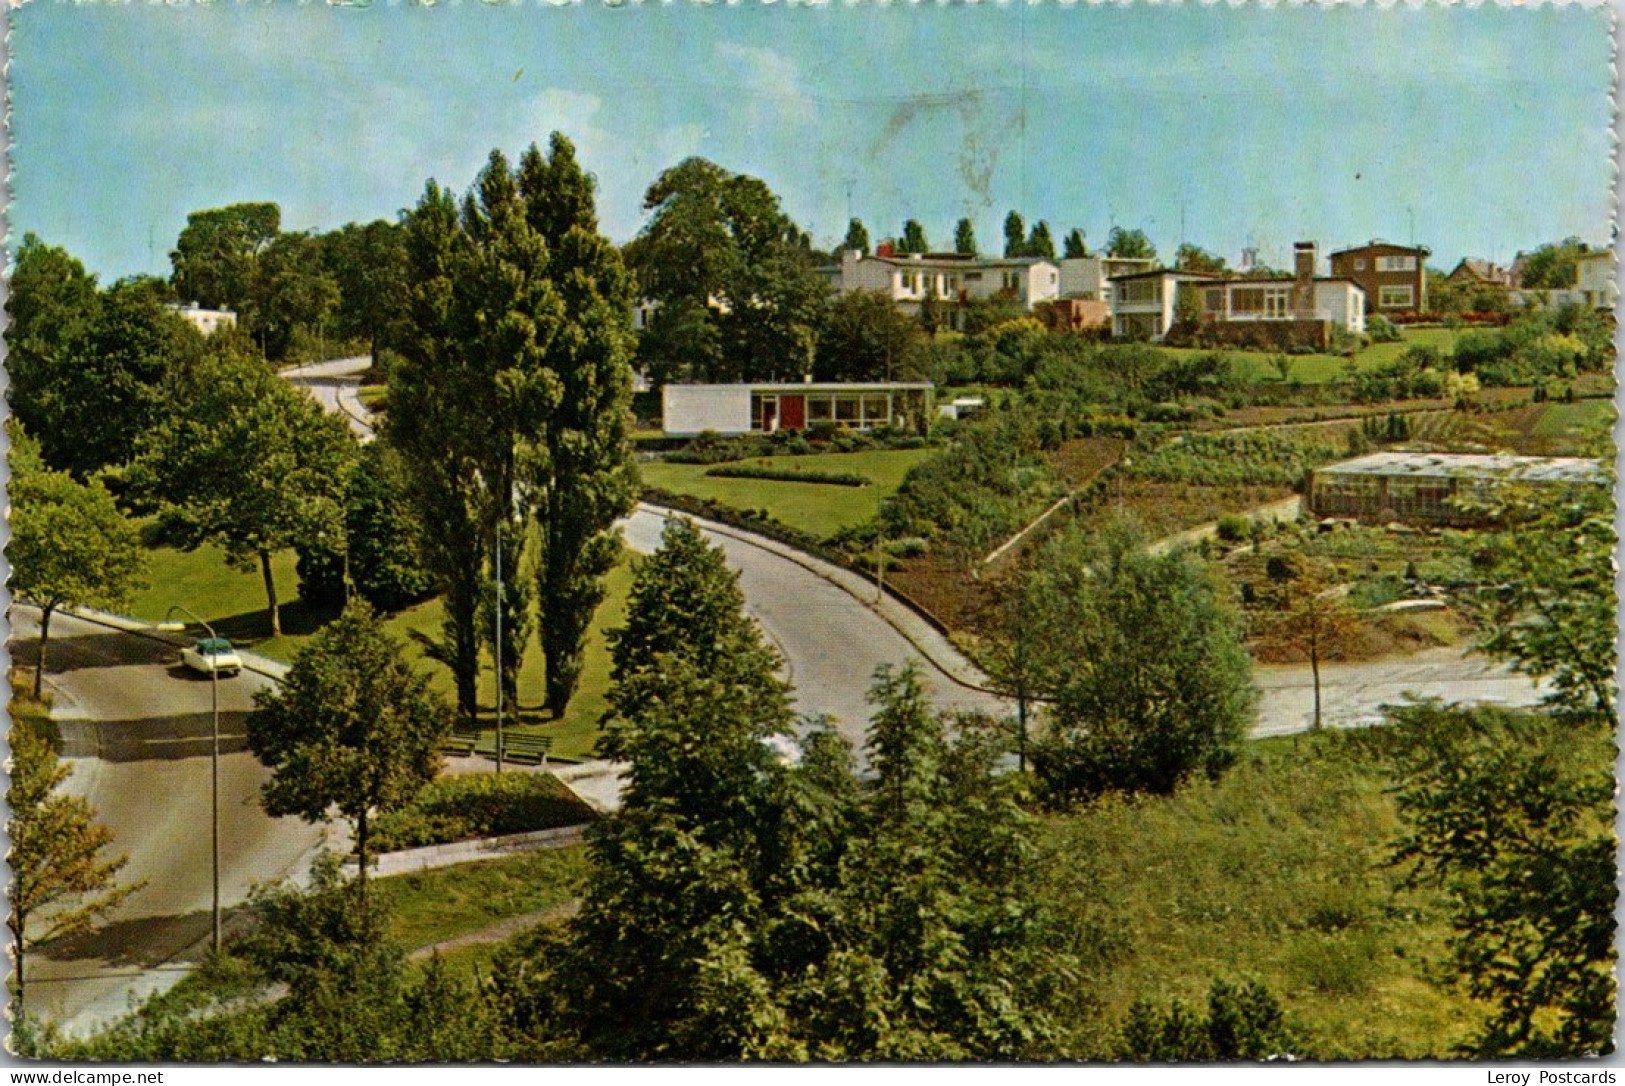 #3167 - Kerkrade, Bungalowpark 1964 (LB) - Kerkrade